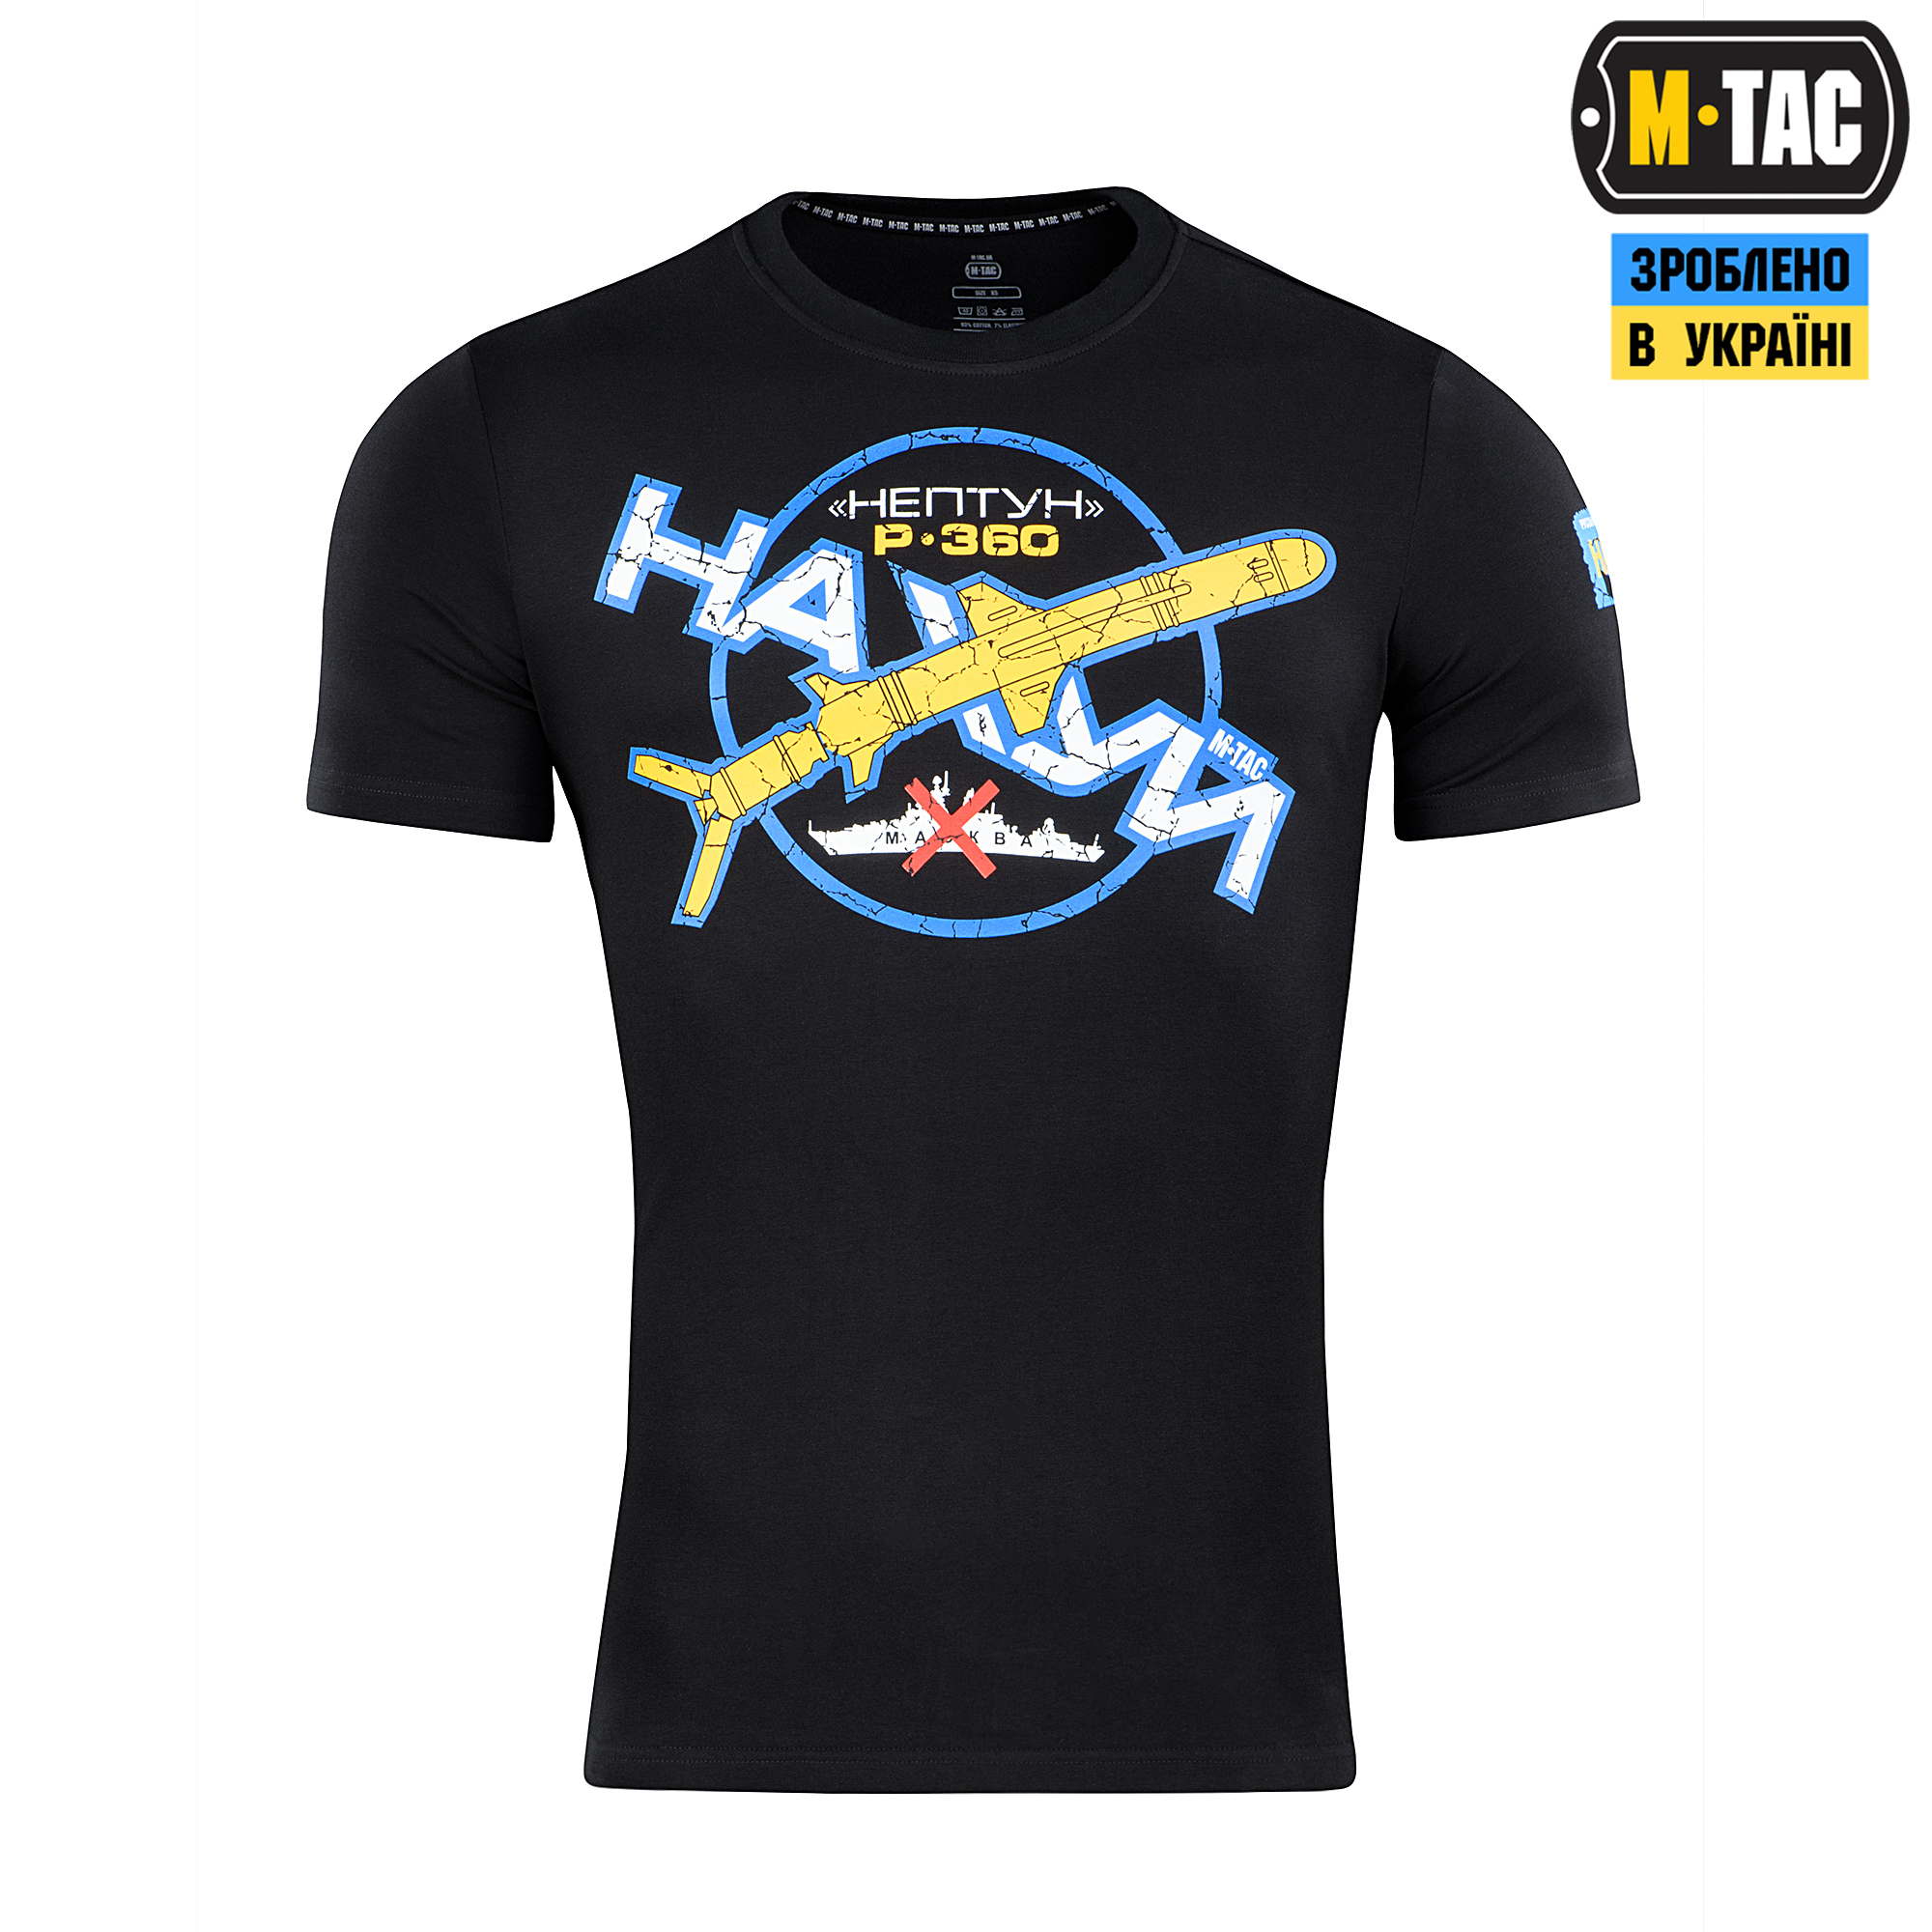 M-Tac футболка Р-360 “Нептун” Black